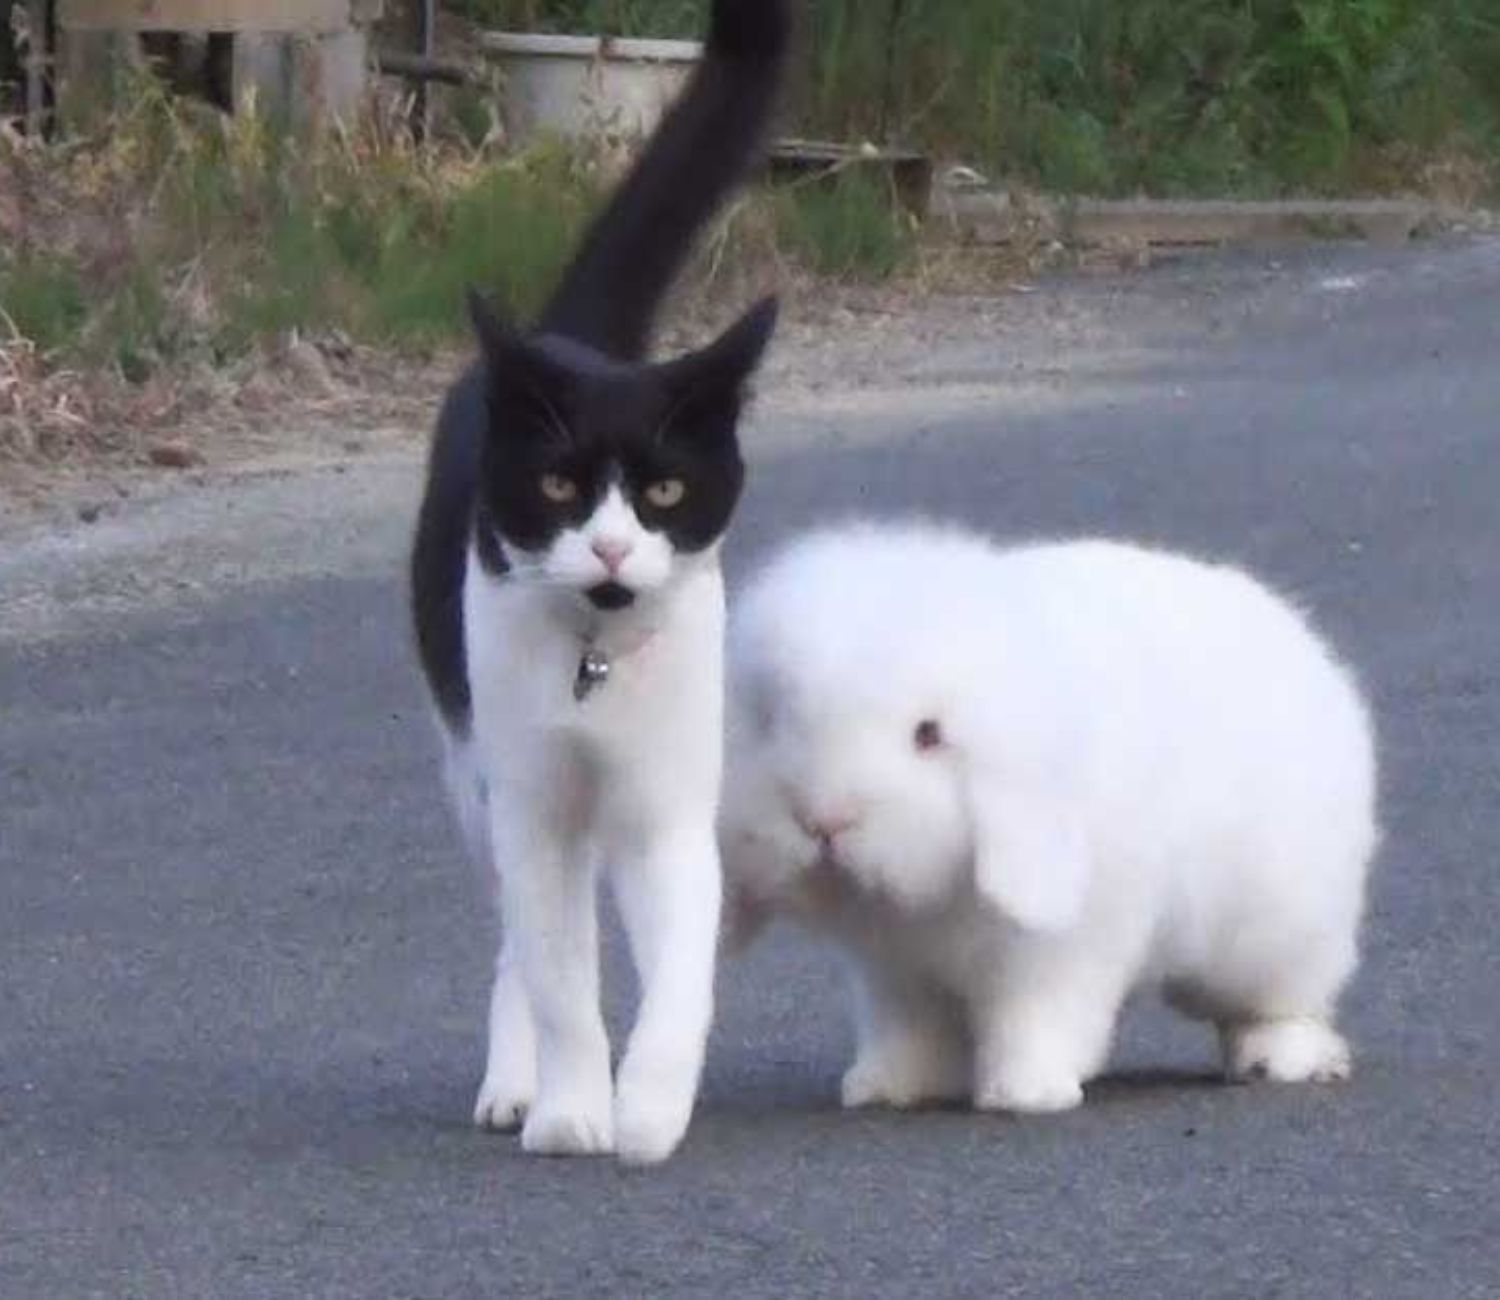 Coniglio e gatto insieme